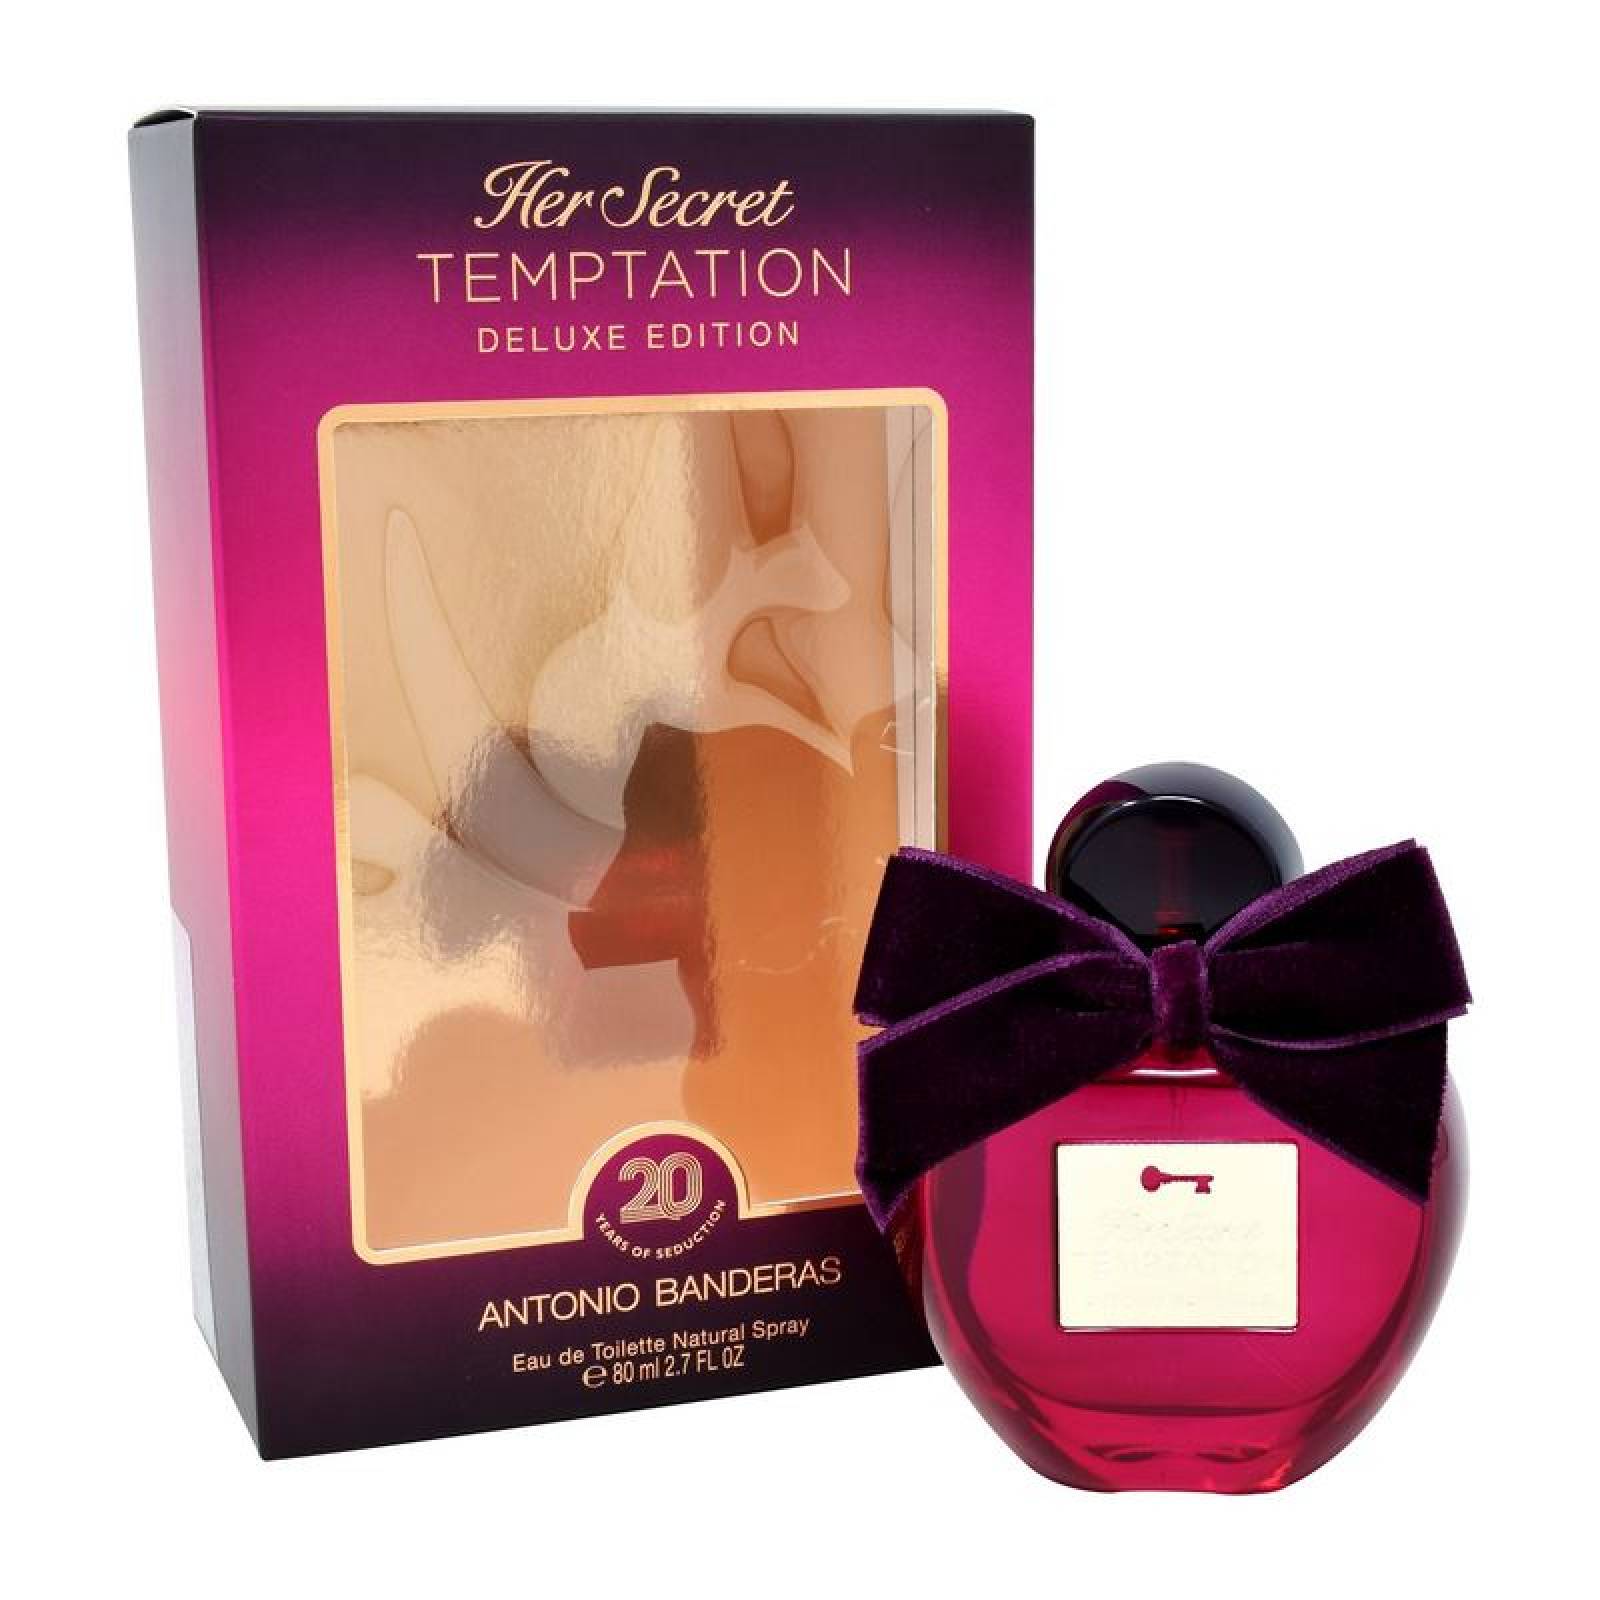 Her Secret Temptation Deluxe Edition 80 ml Edt Spray de Antonio Banderas